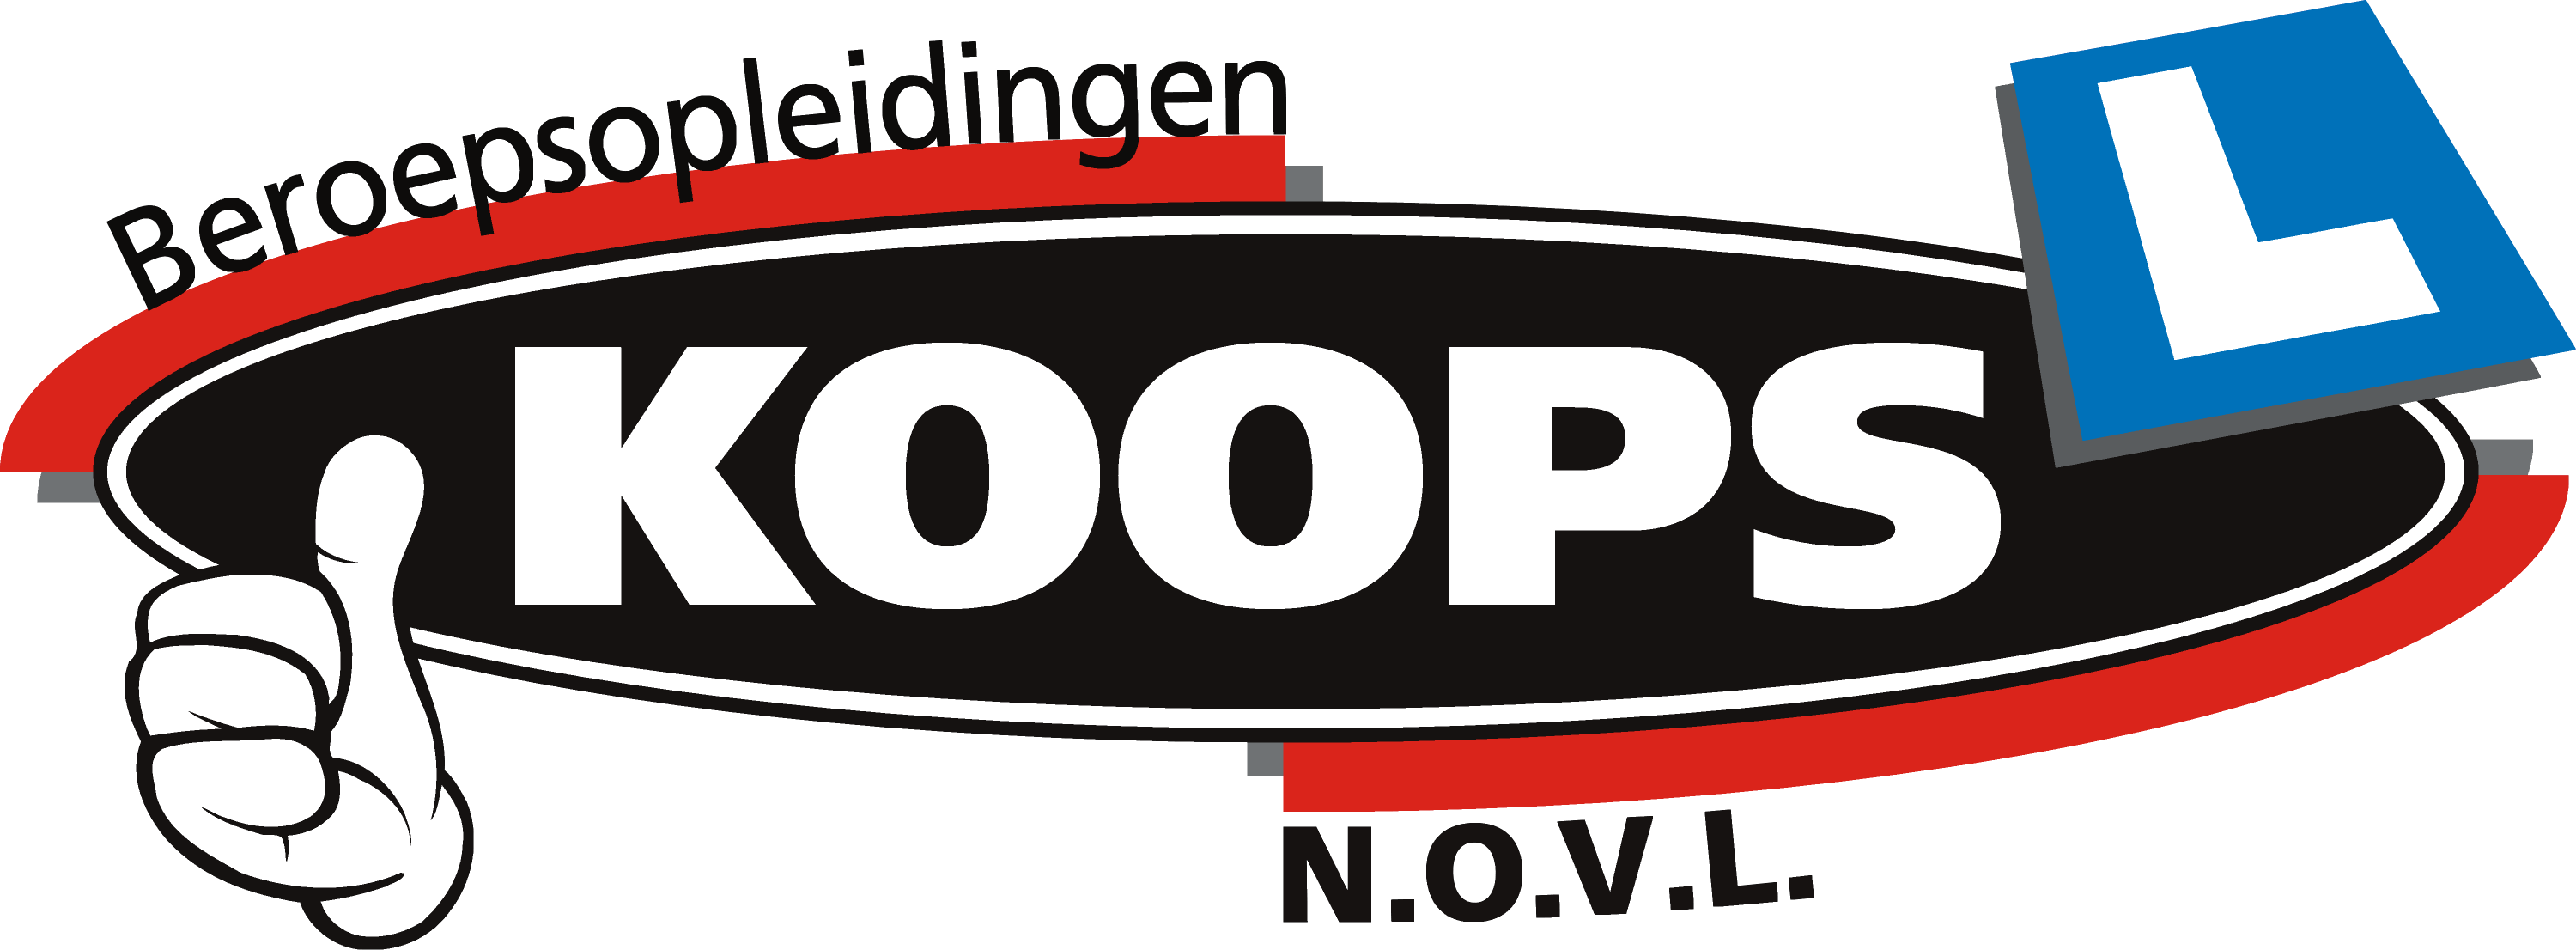 Koops NOVL Opleidingen - logo